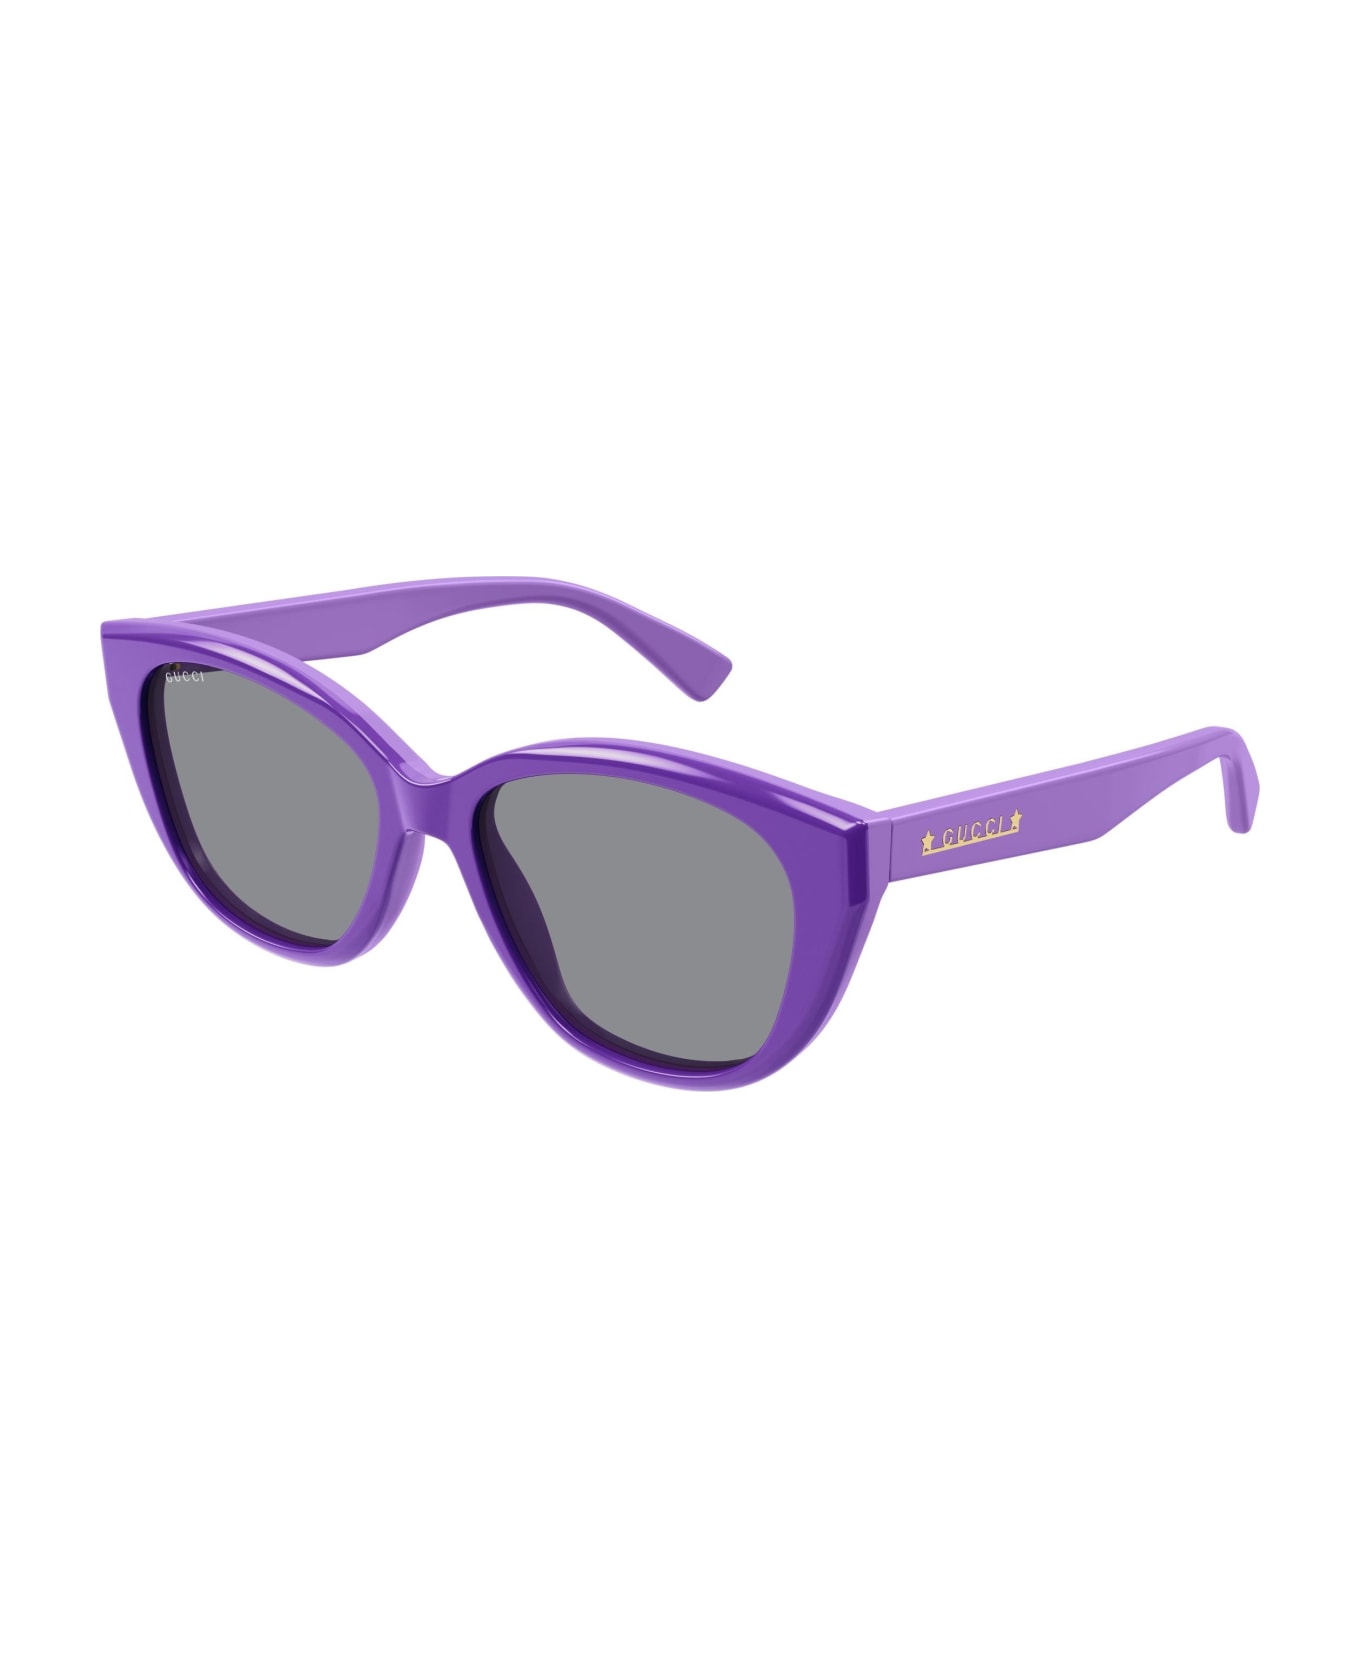 Gucci Eyewear Sunglasses - Viola/Grigio サングラス